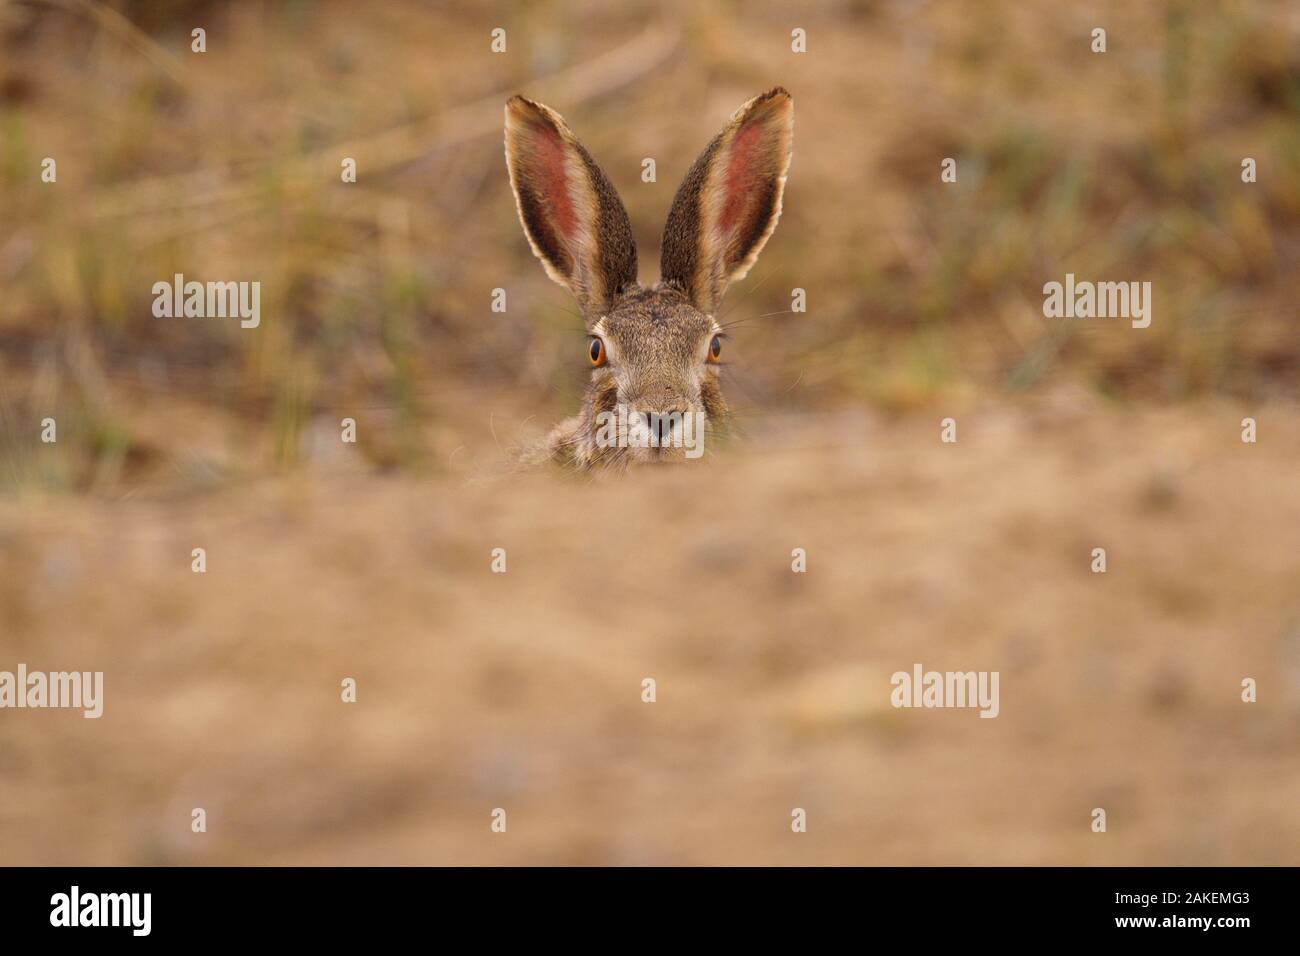 Desert hare (Lepus tibetanus)face and ears  portrait, Inner Mongolia, China Stock Photo